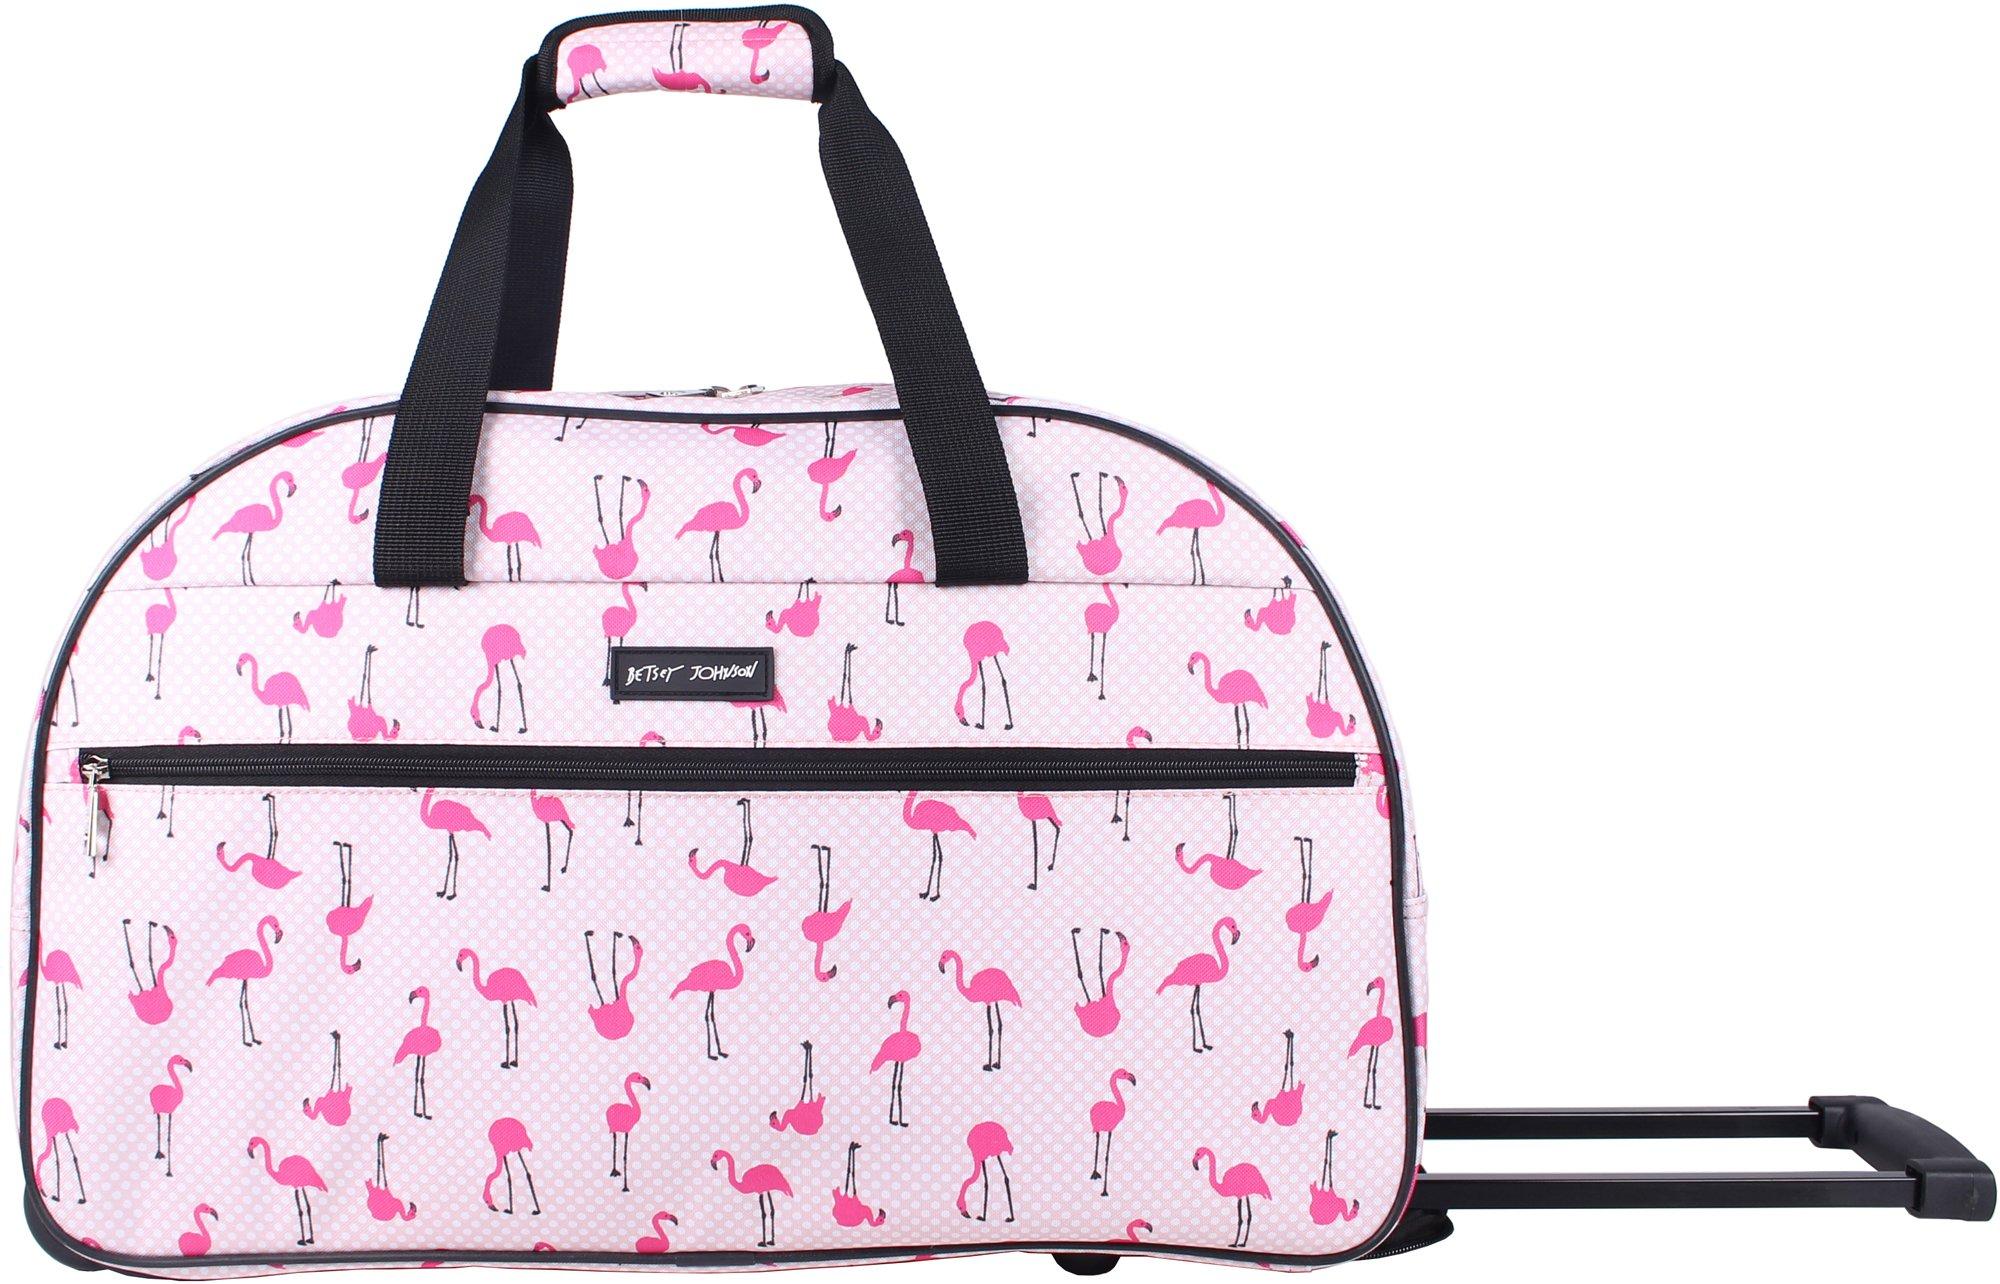 wheeled travel bag pink